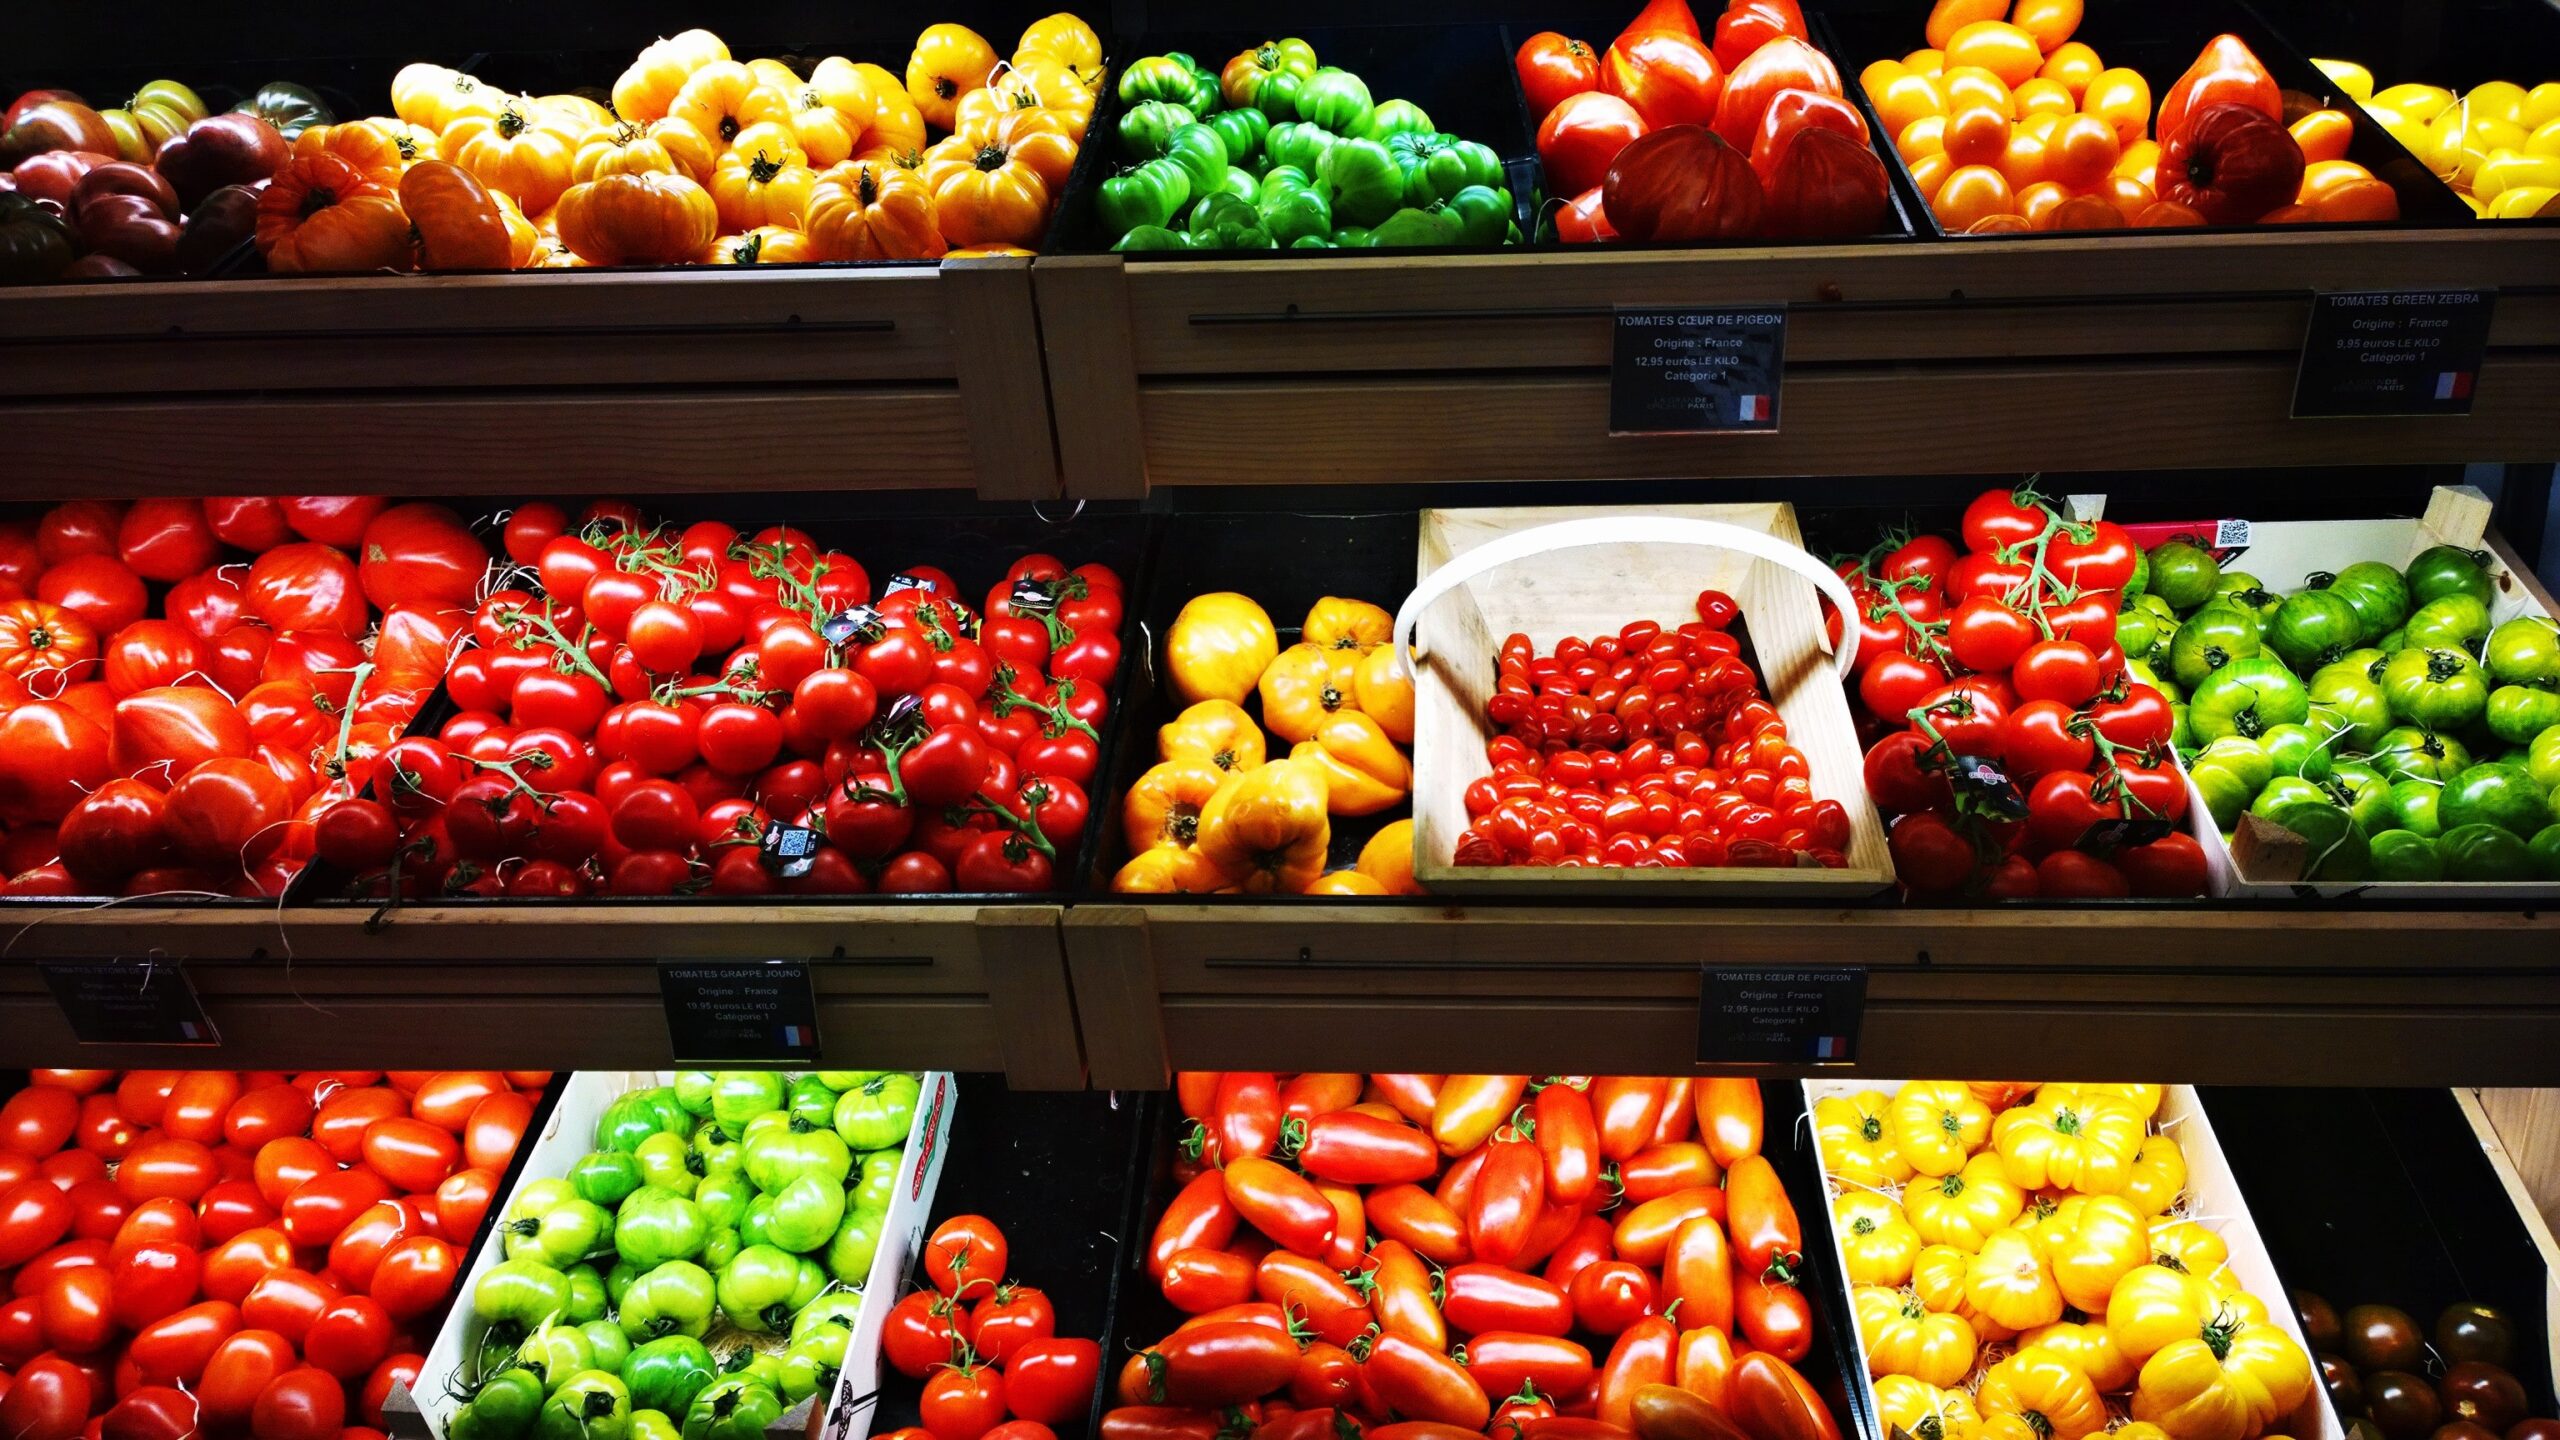 Francia prohíbe empaques de plástico en frutas y verduras pequeñas. Foto de Chantal Garnier para Unsplash